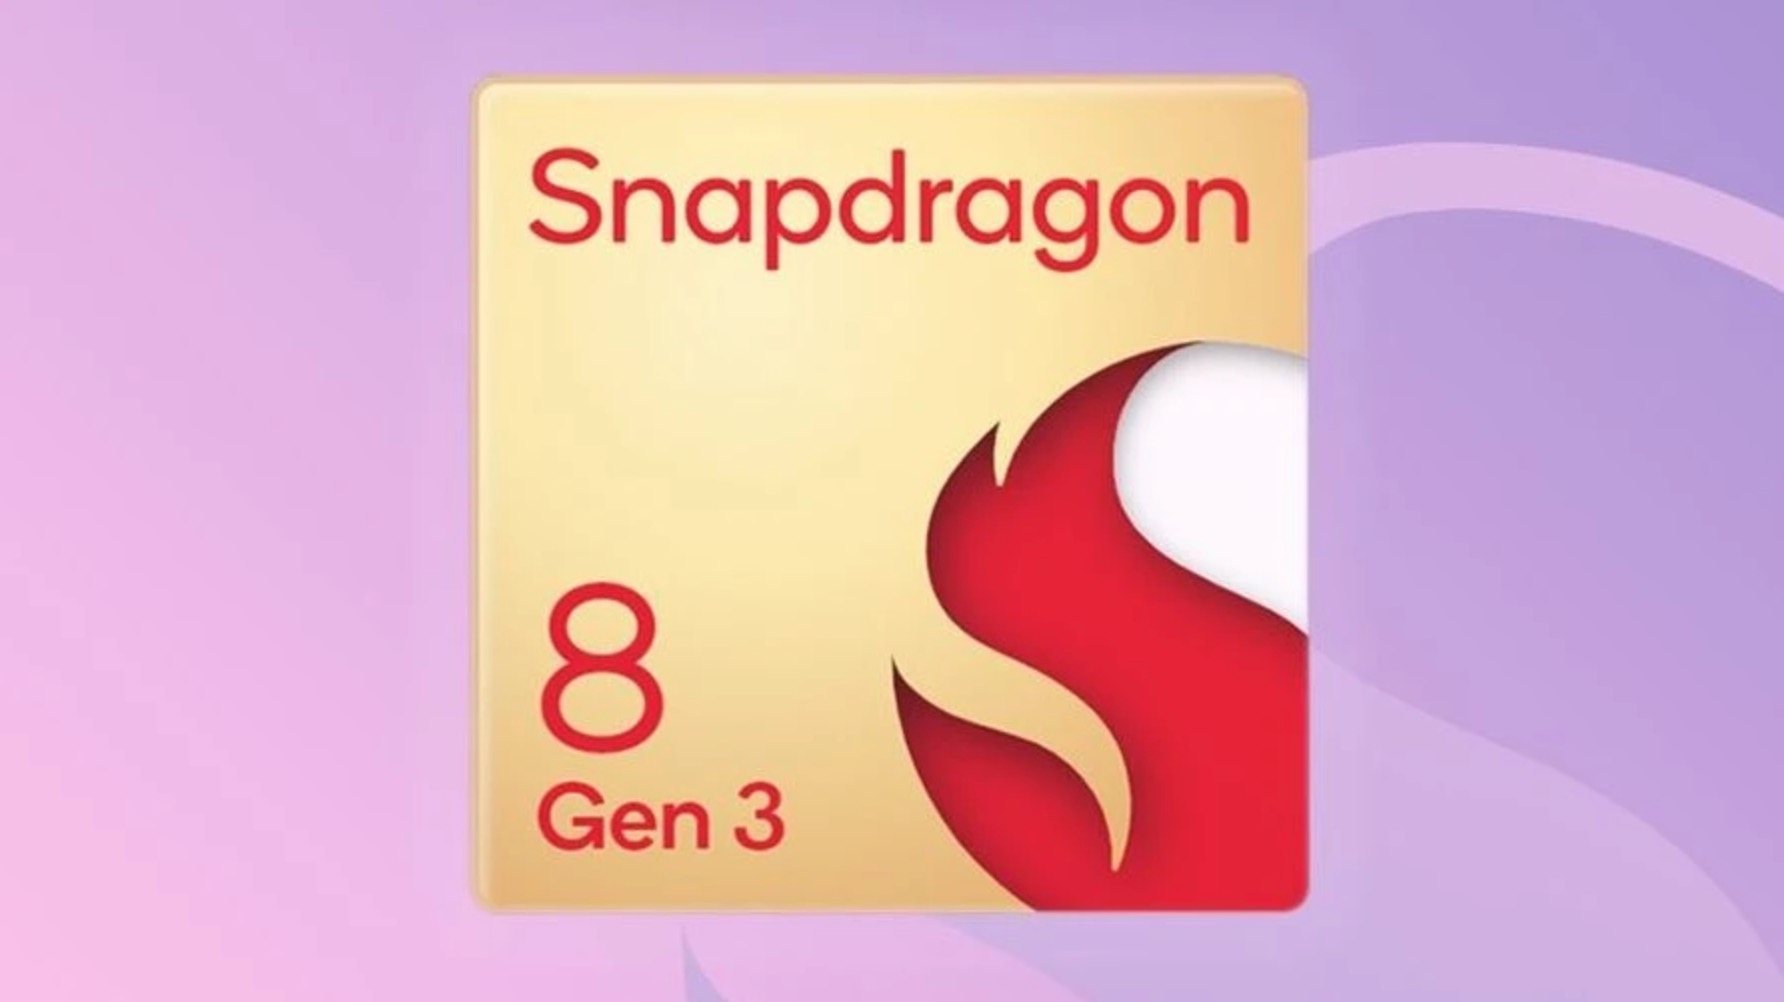 Los primeros smartphones en contar con el procesador Snapdragon 8 Gen 4 llegarán a mediados de octubre